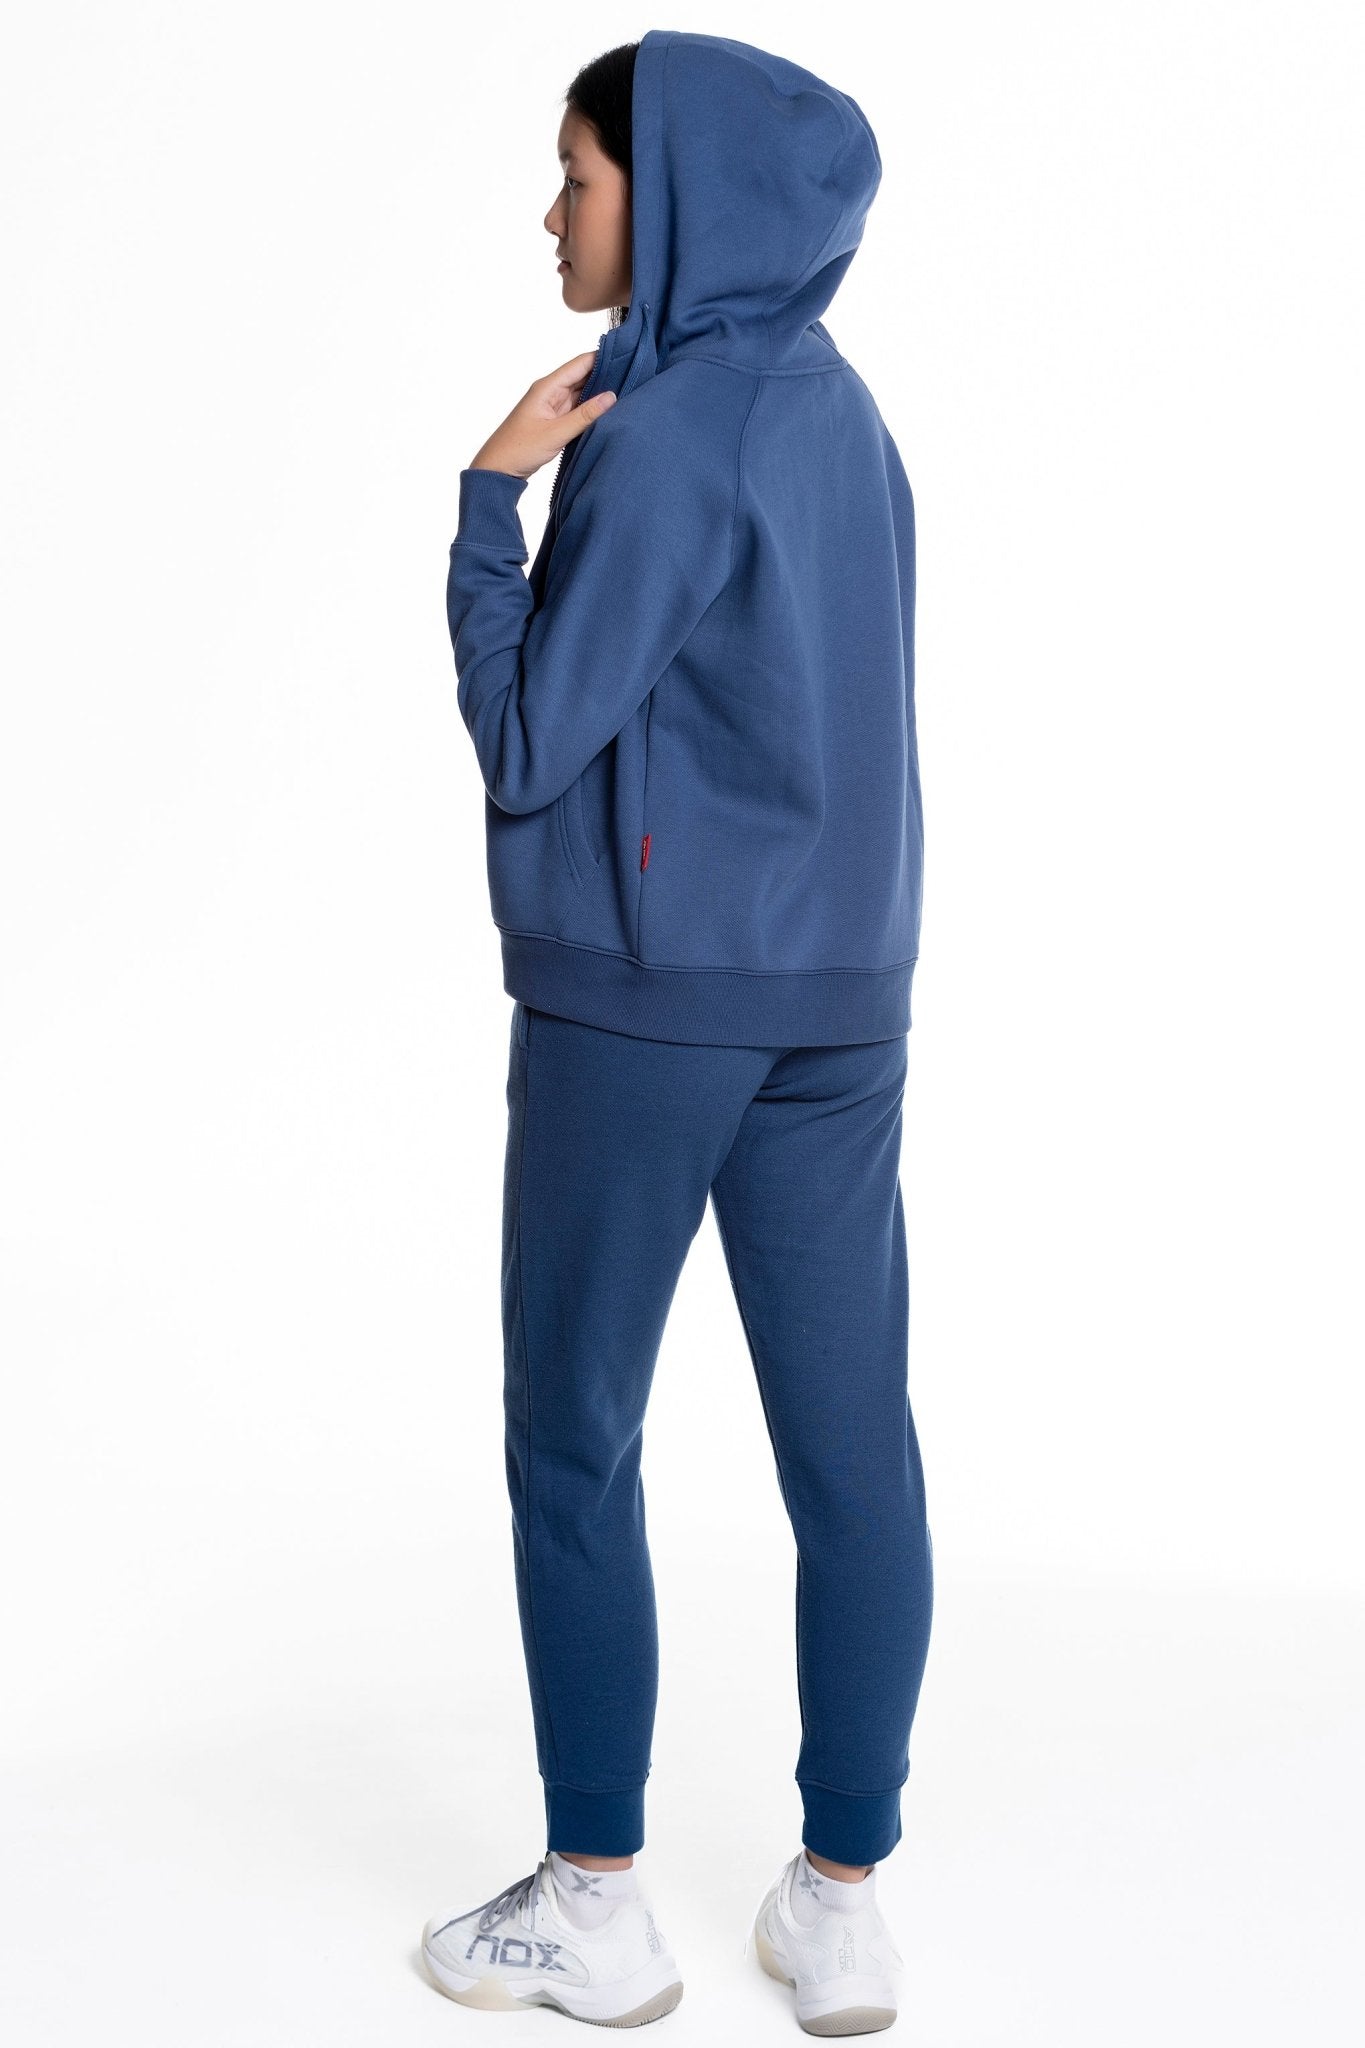 Sudadera con capucha mujer BASIC - CASUAL azul marino - NOX